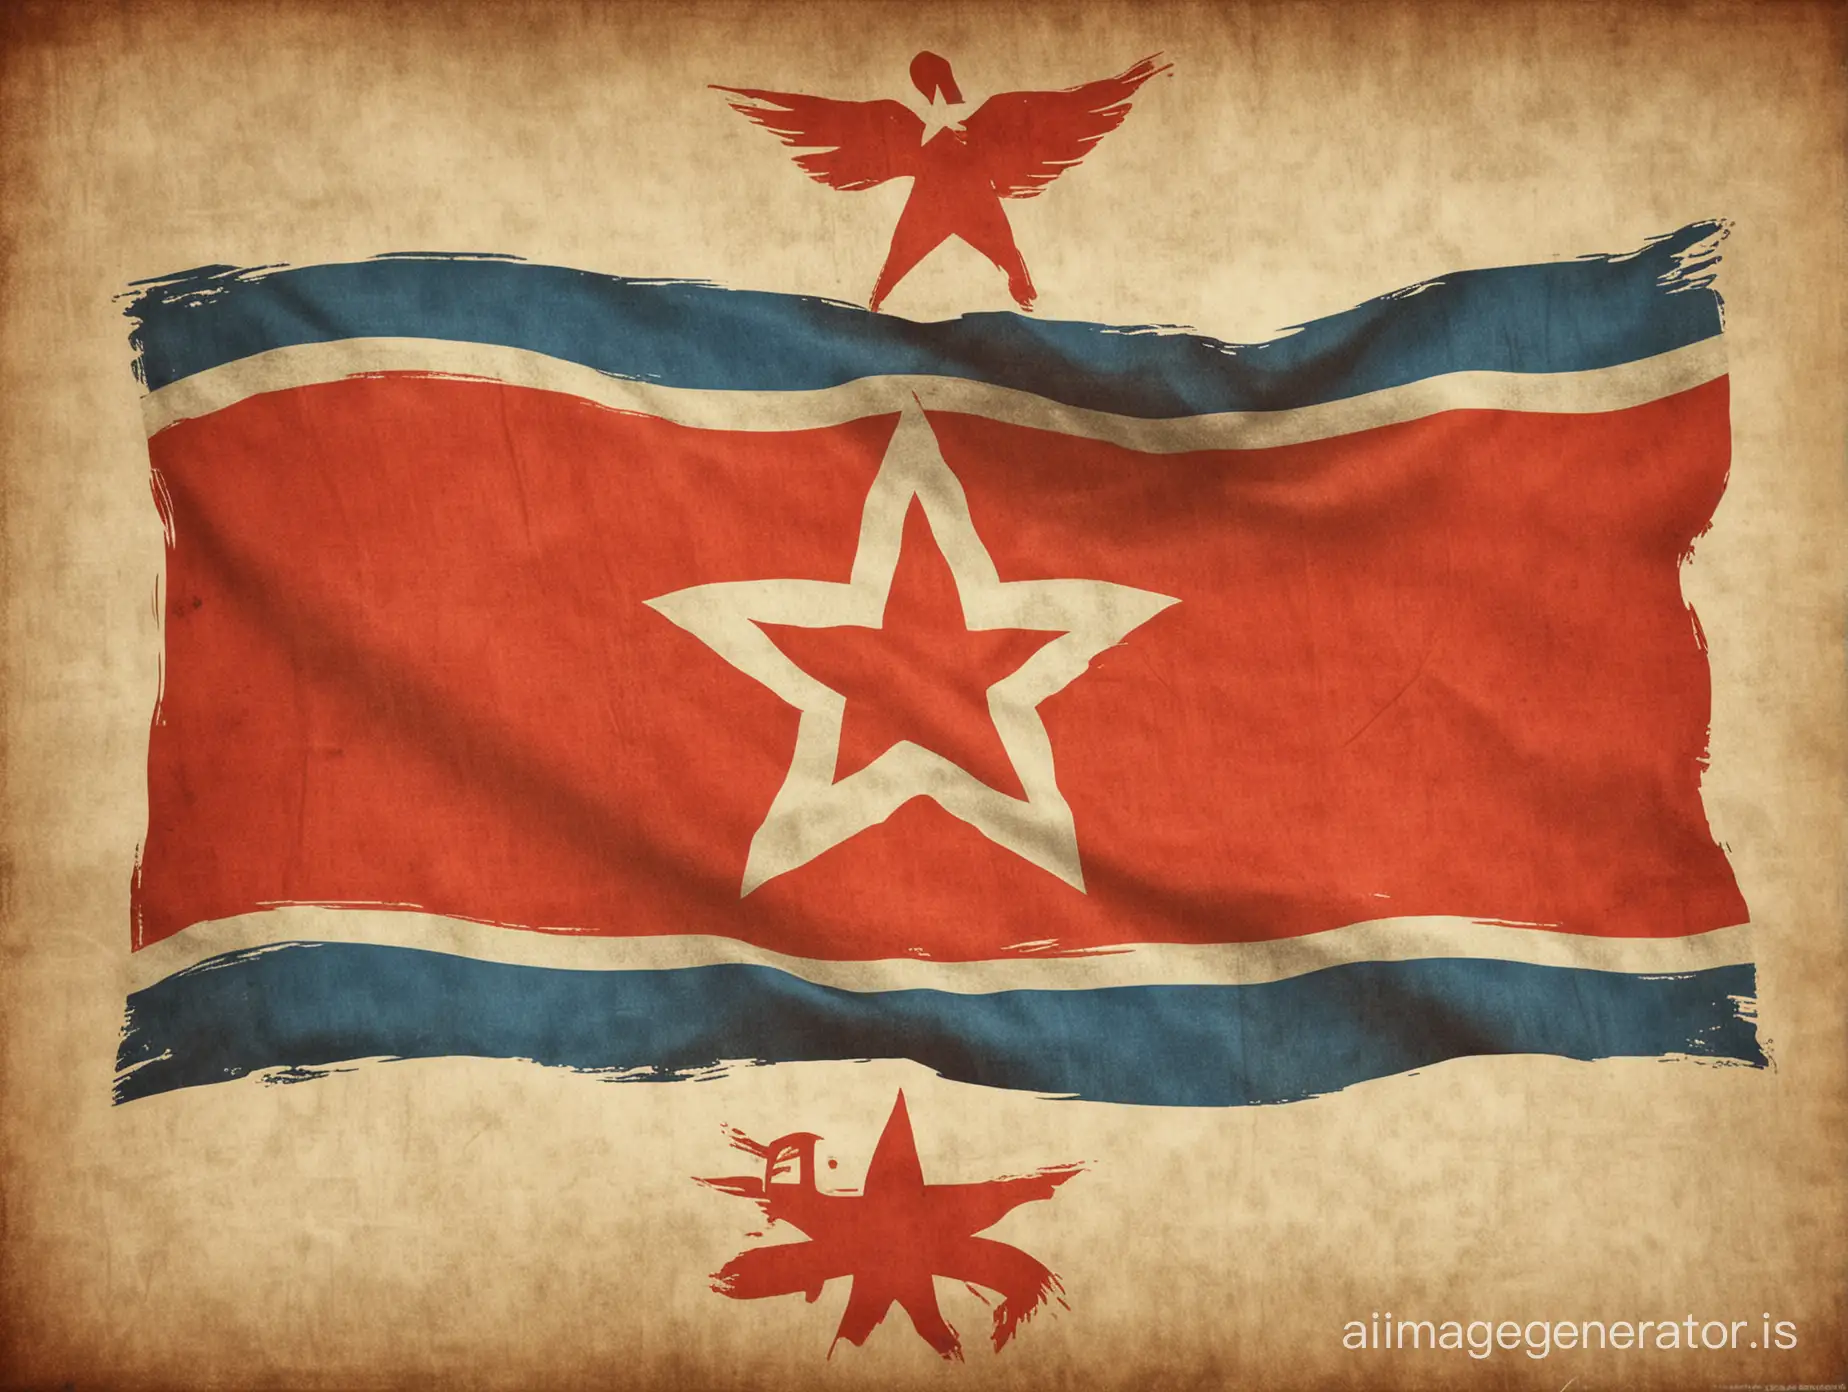 North Korean flag emblem propaganda poster